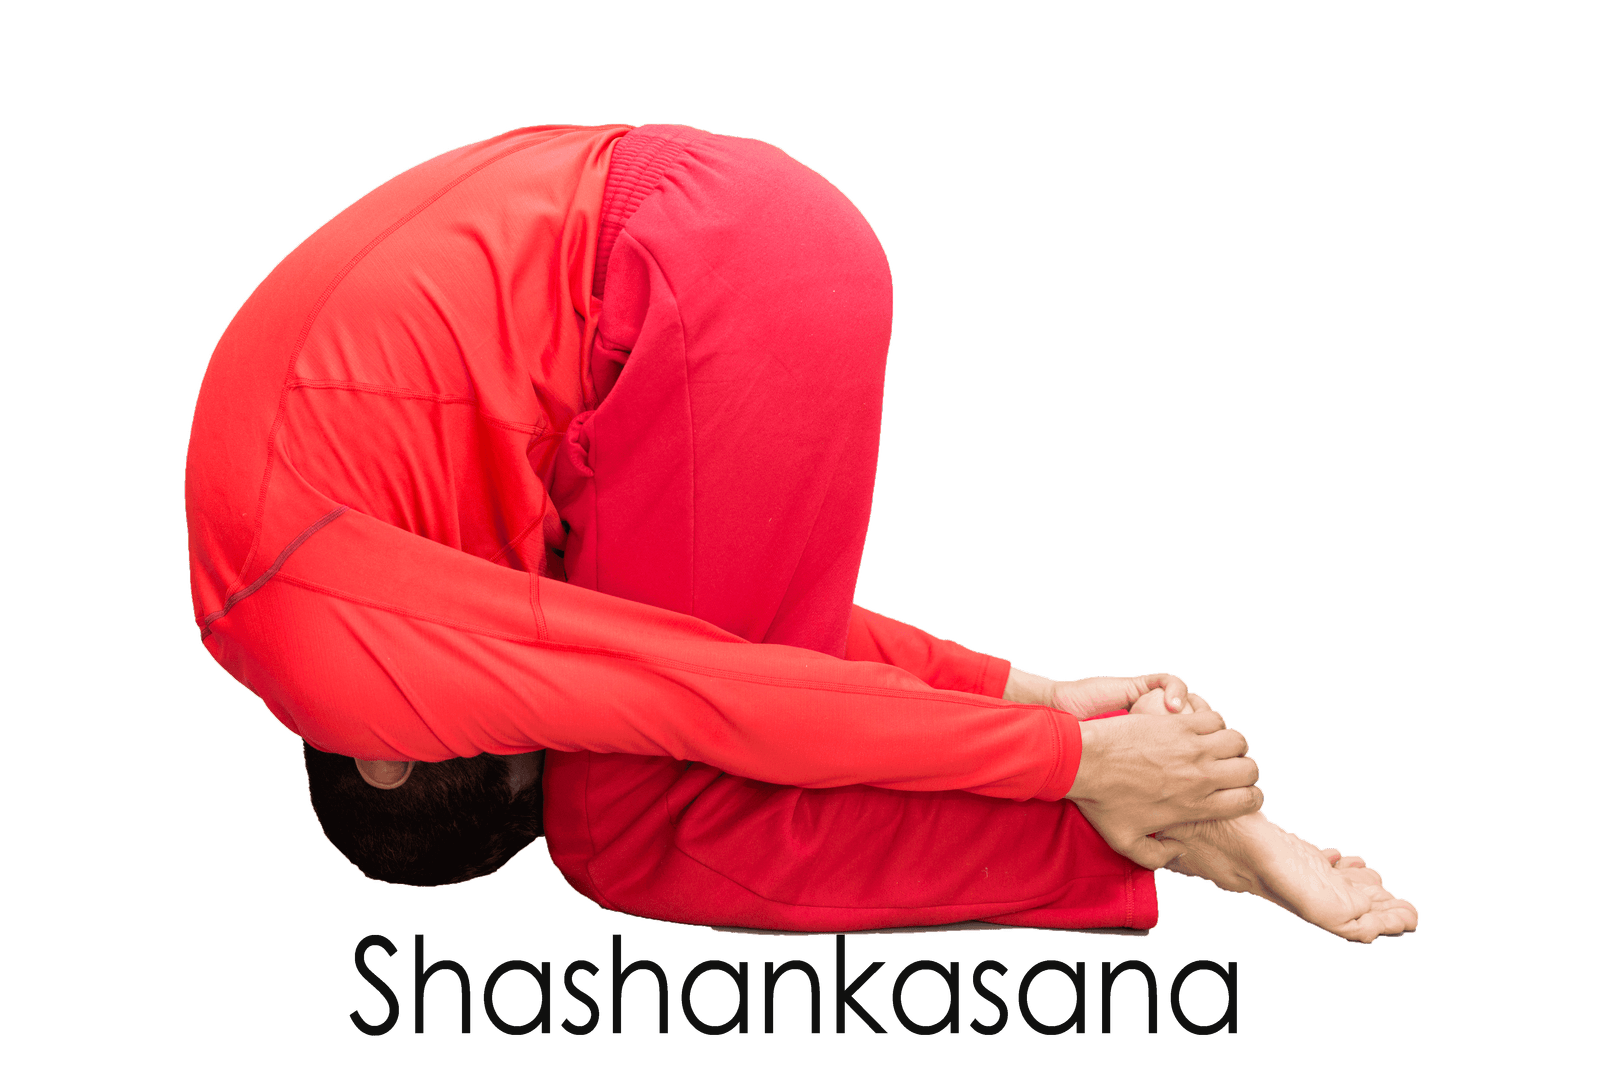 How To Do ASHTANGA YOGA SHASHANKASANA (HARE POSE) - YouTube